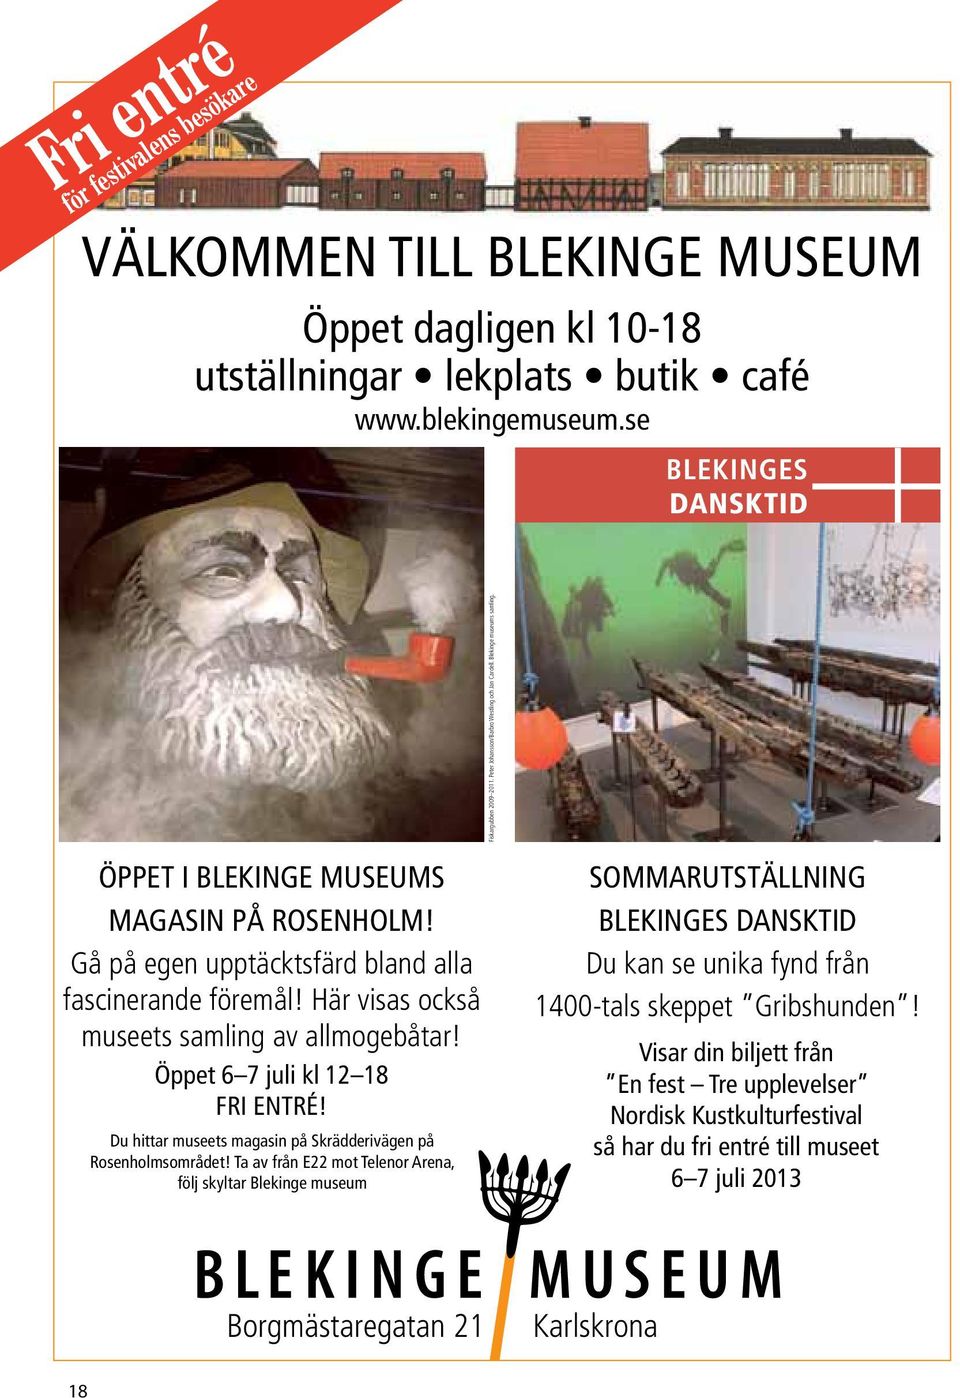 Här visas också museets samling av allmogebåtar! öppet 6 7 juli kl 12 18 FRi entré! Du hittar museets magasin på skrädderivägen på Rosenholmsområdet!